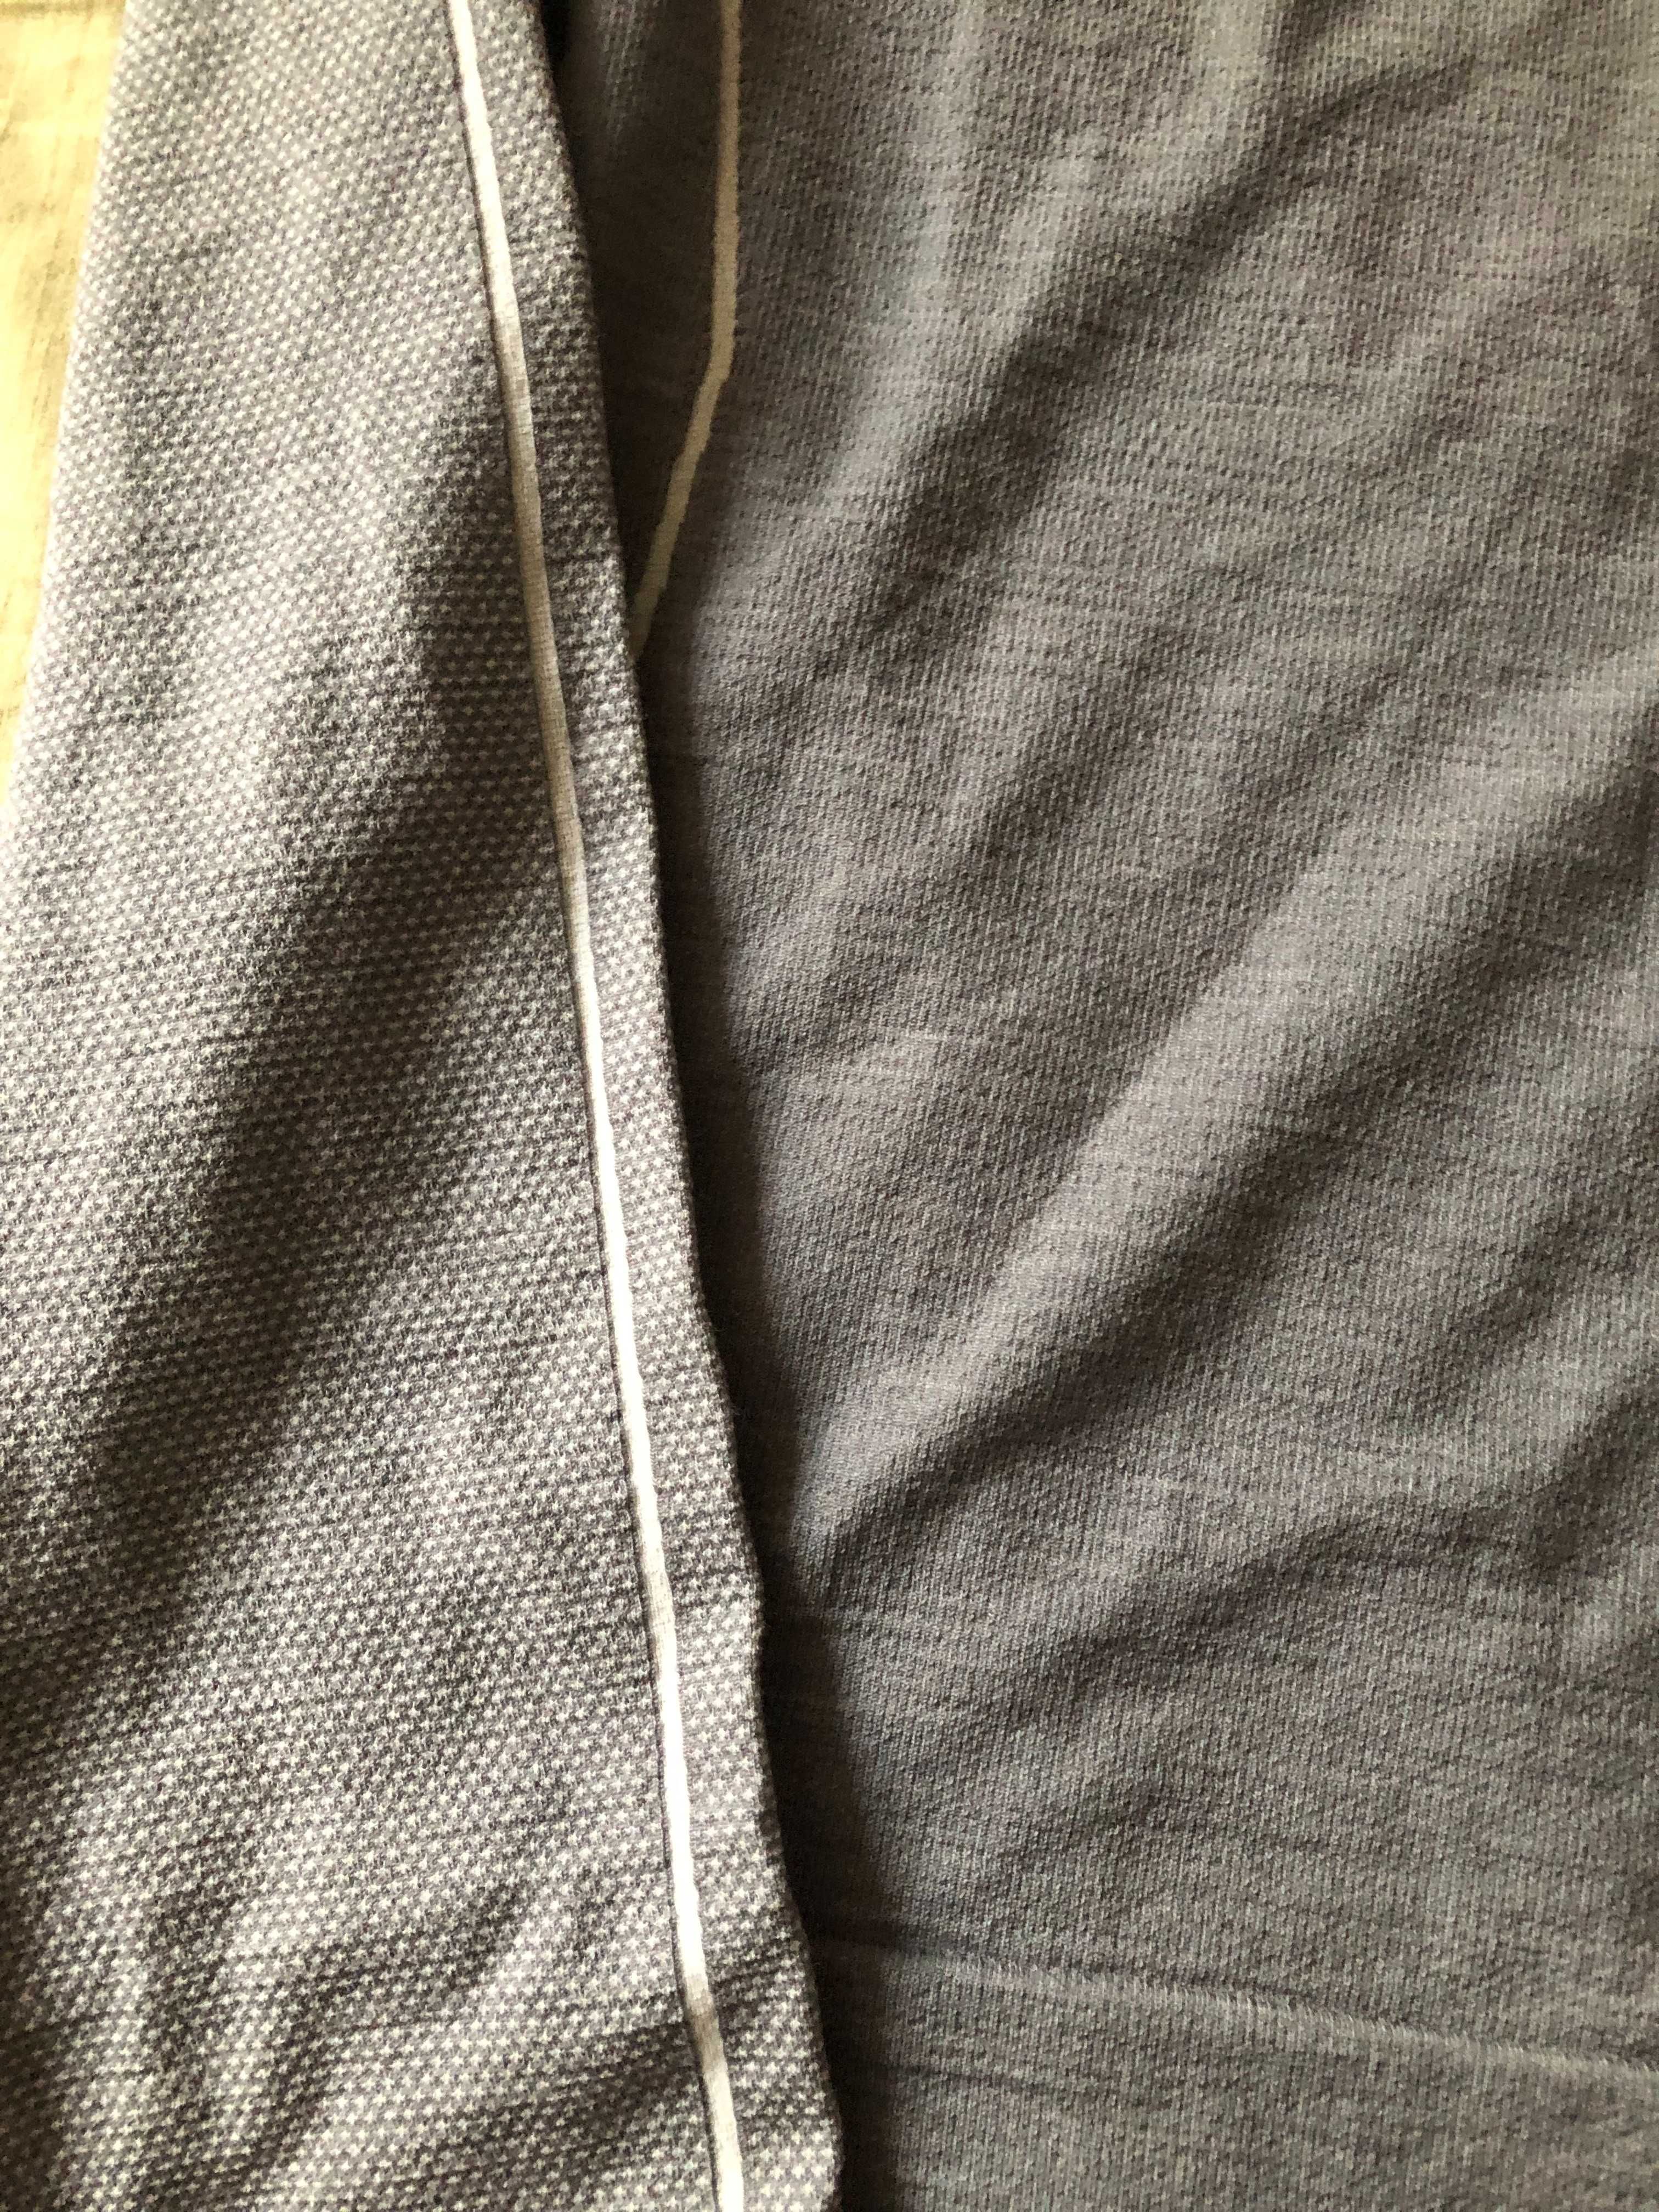 Falke-мъжка термо блуза_мерино-нова с етикет-XL размер